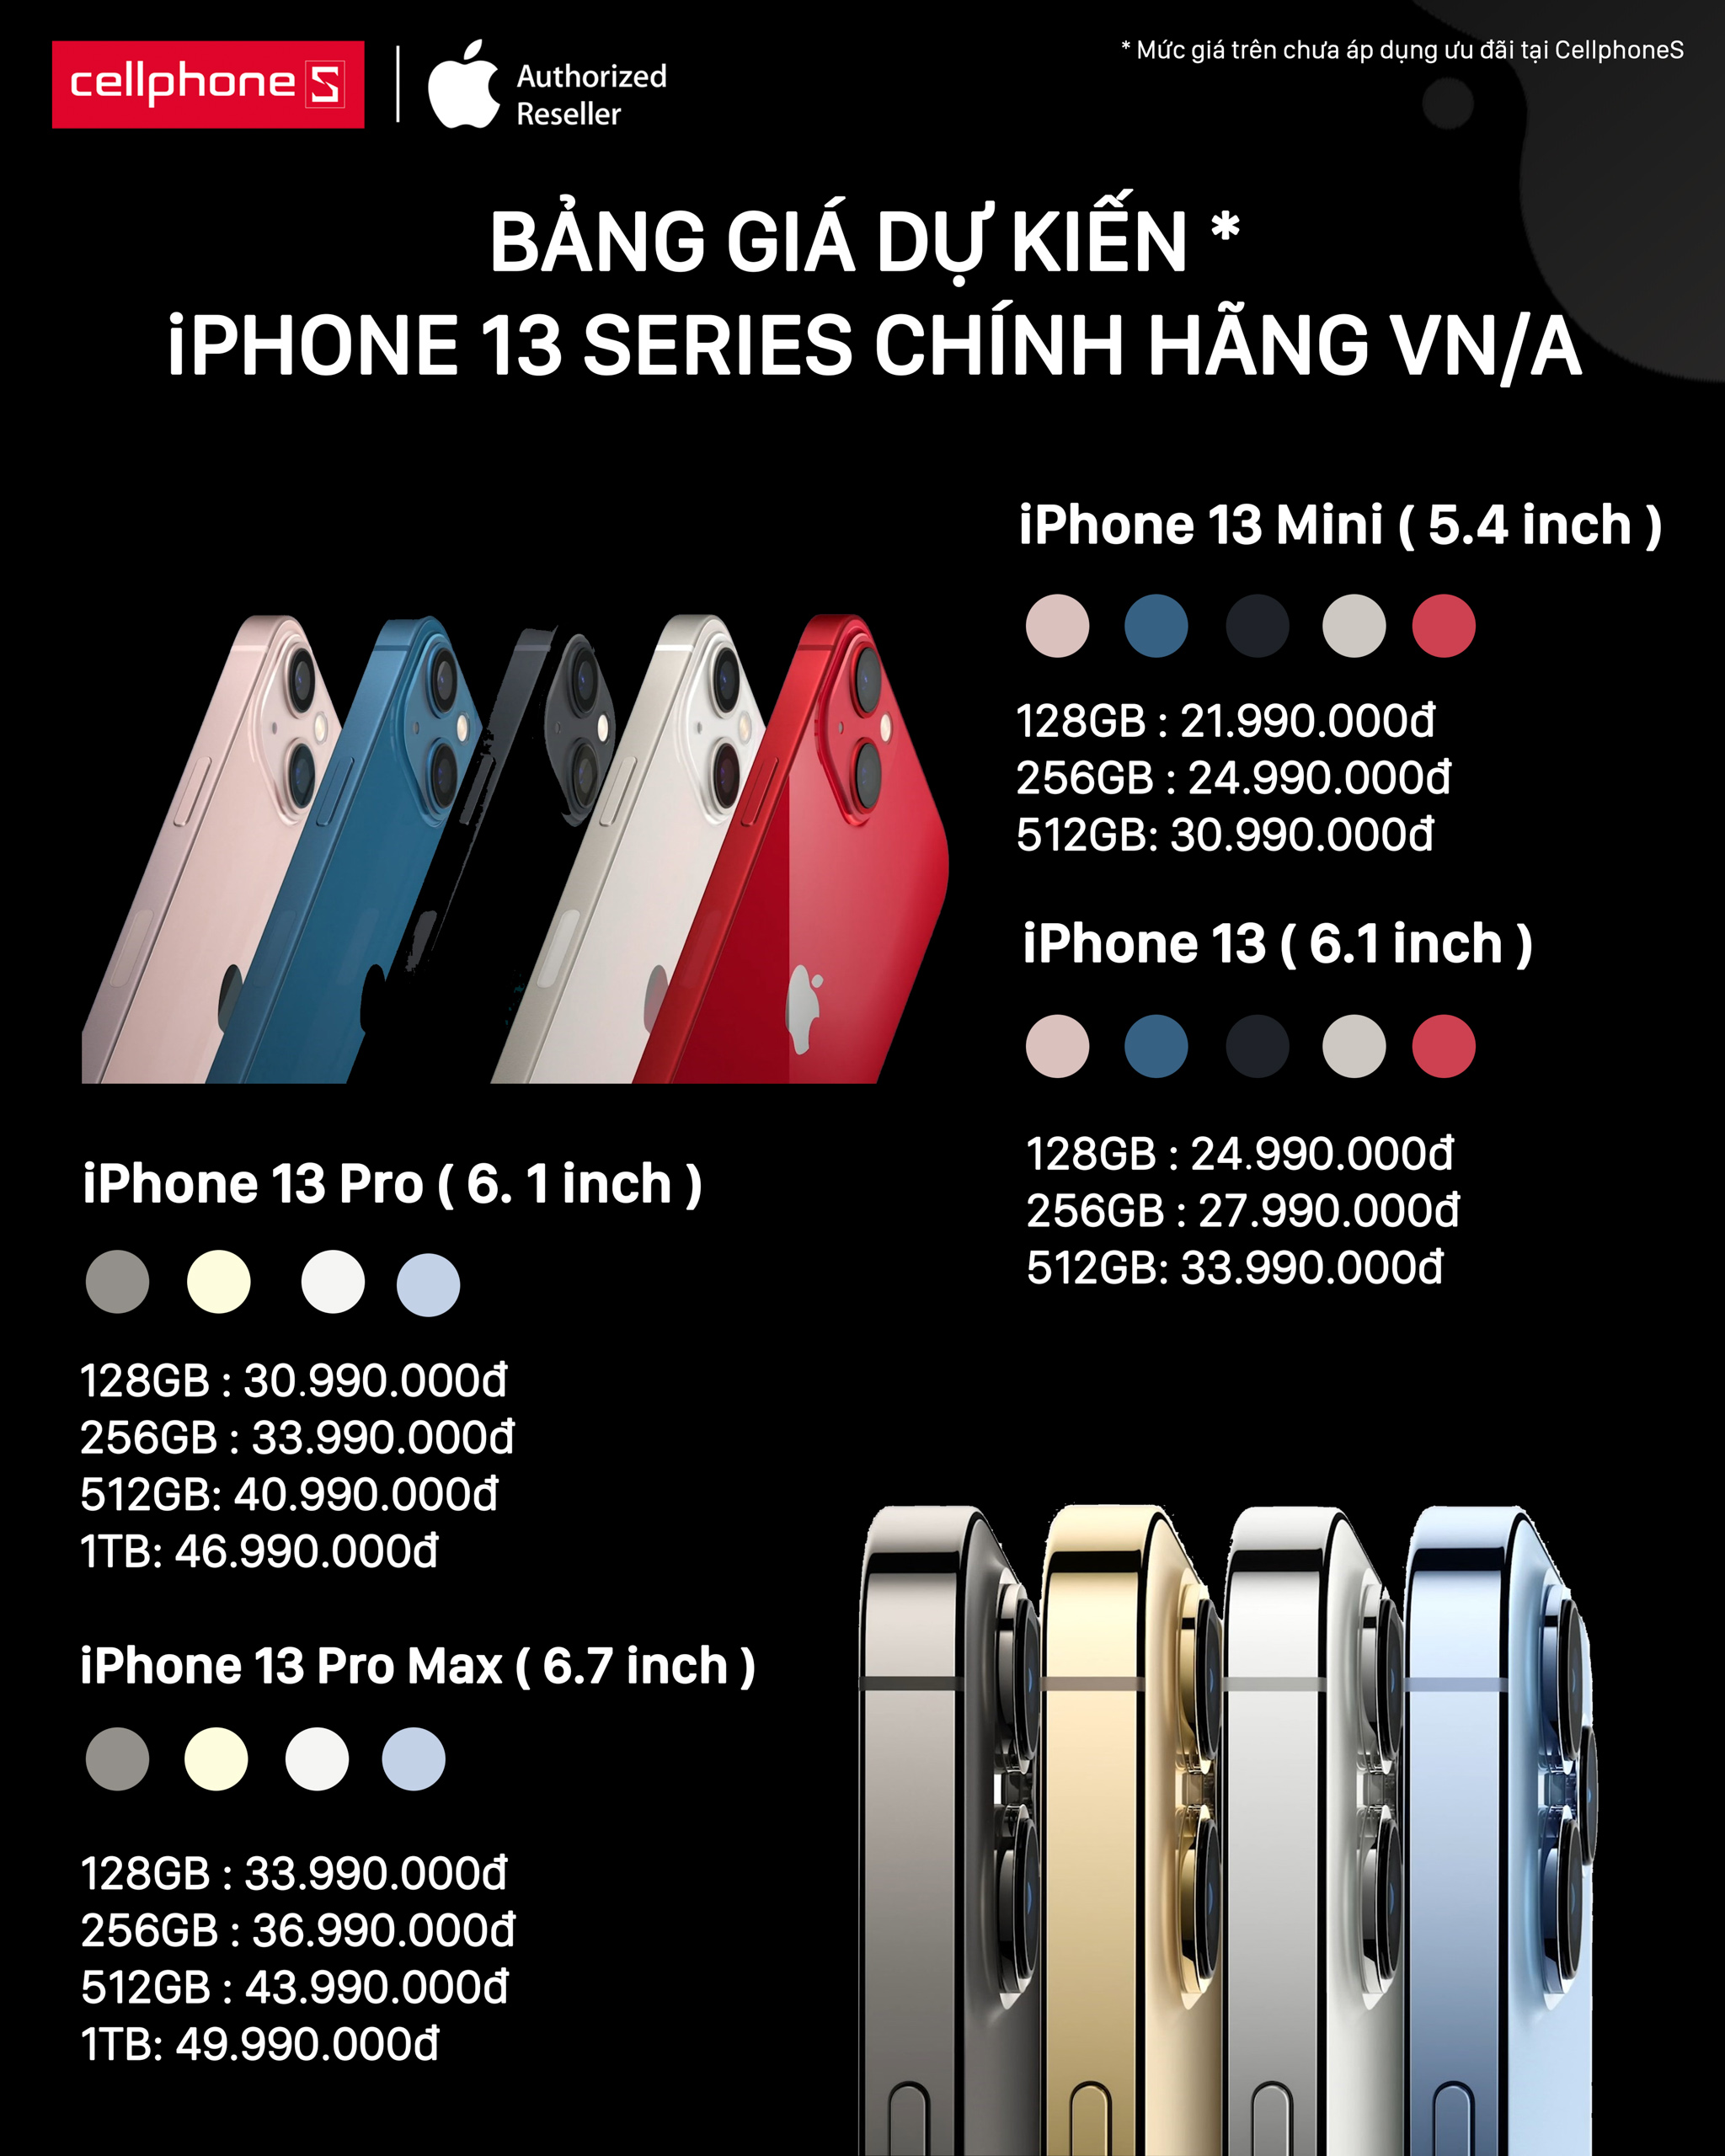 CellphoneS công bố giá bán dự kiến của iPhone 13 tại thị trường Việt Nam